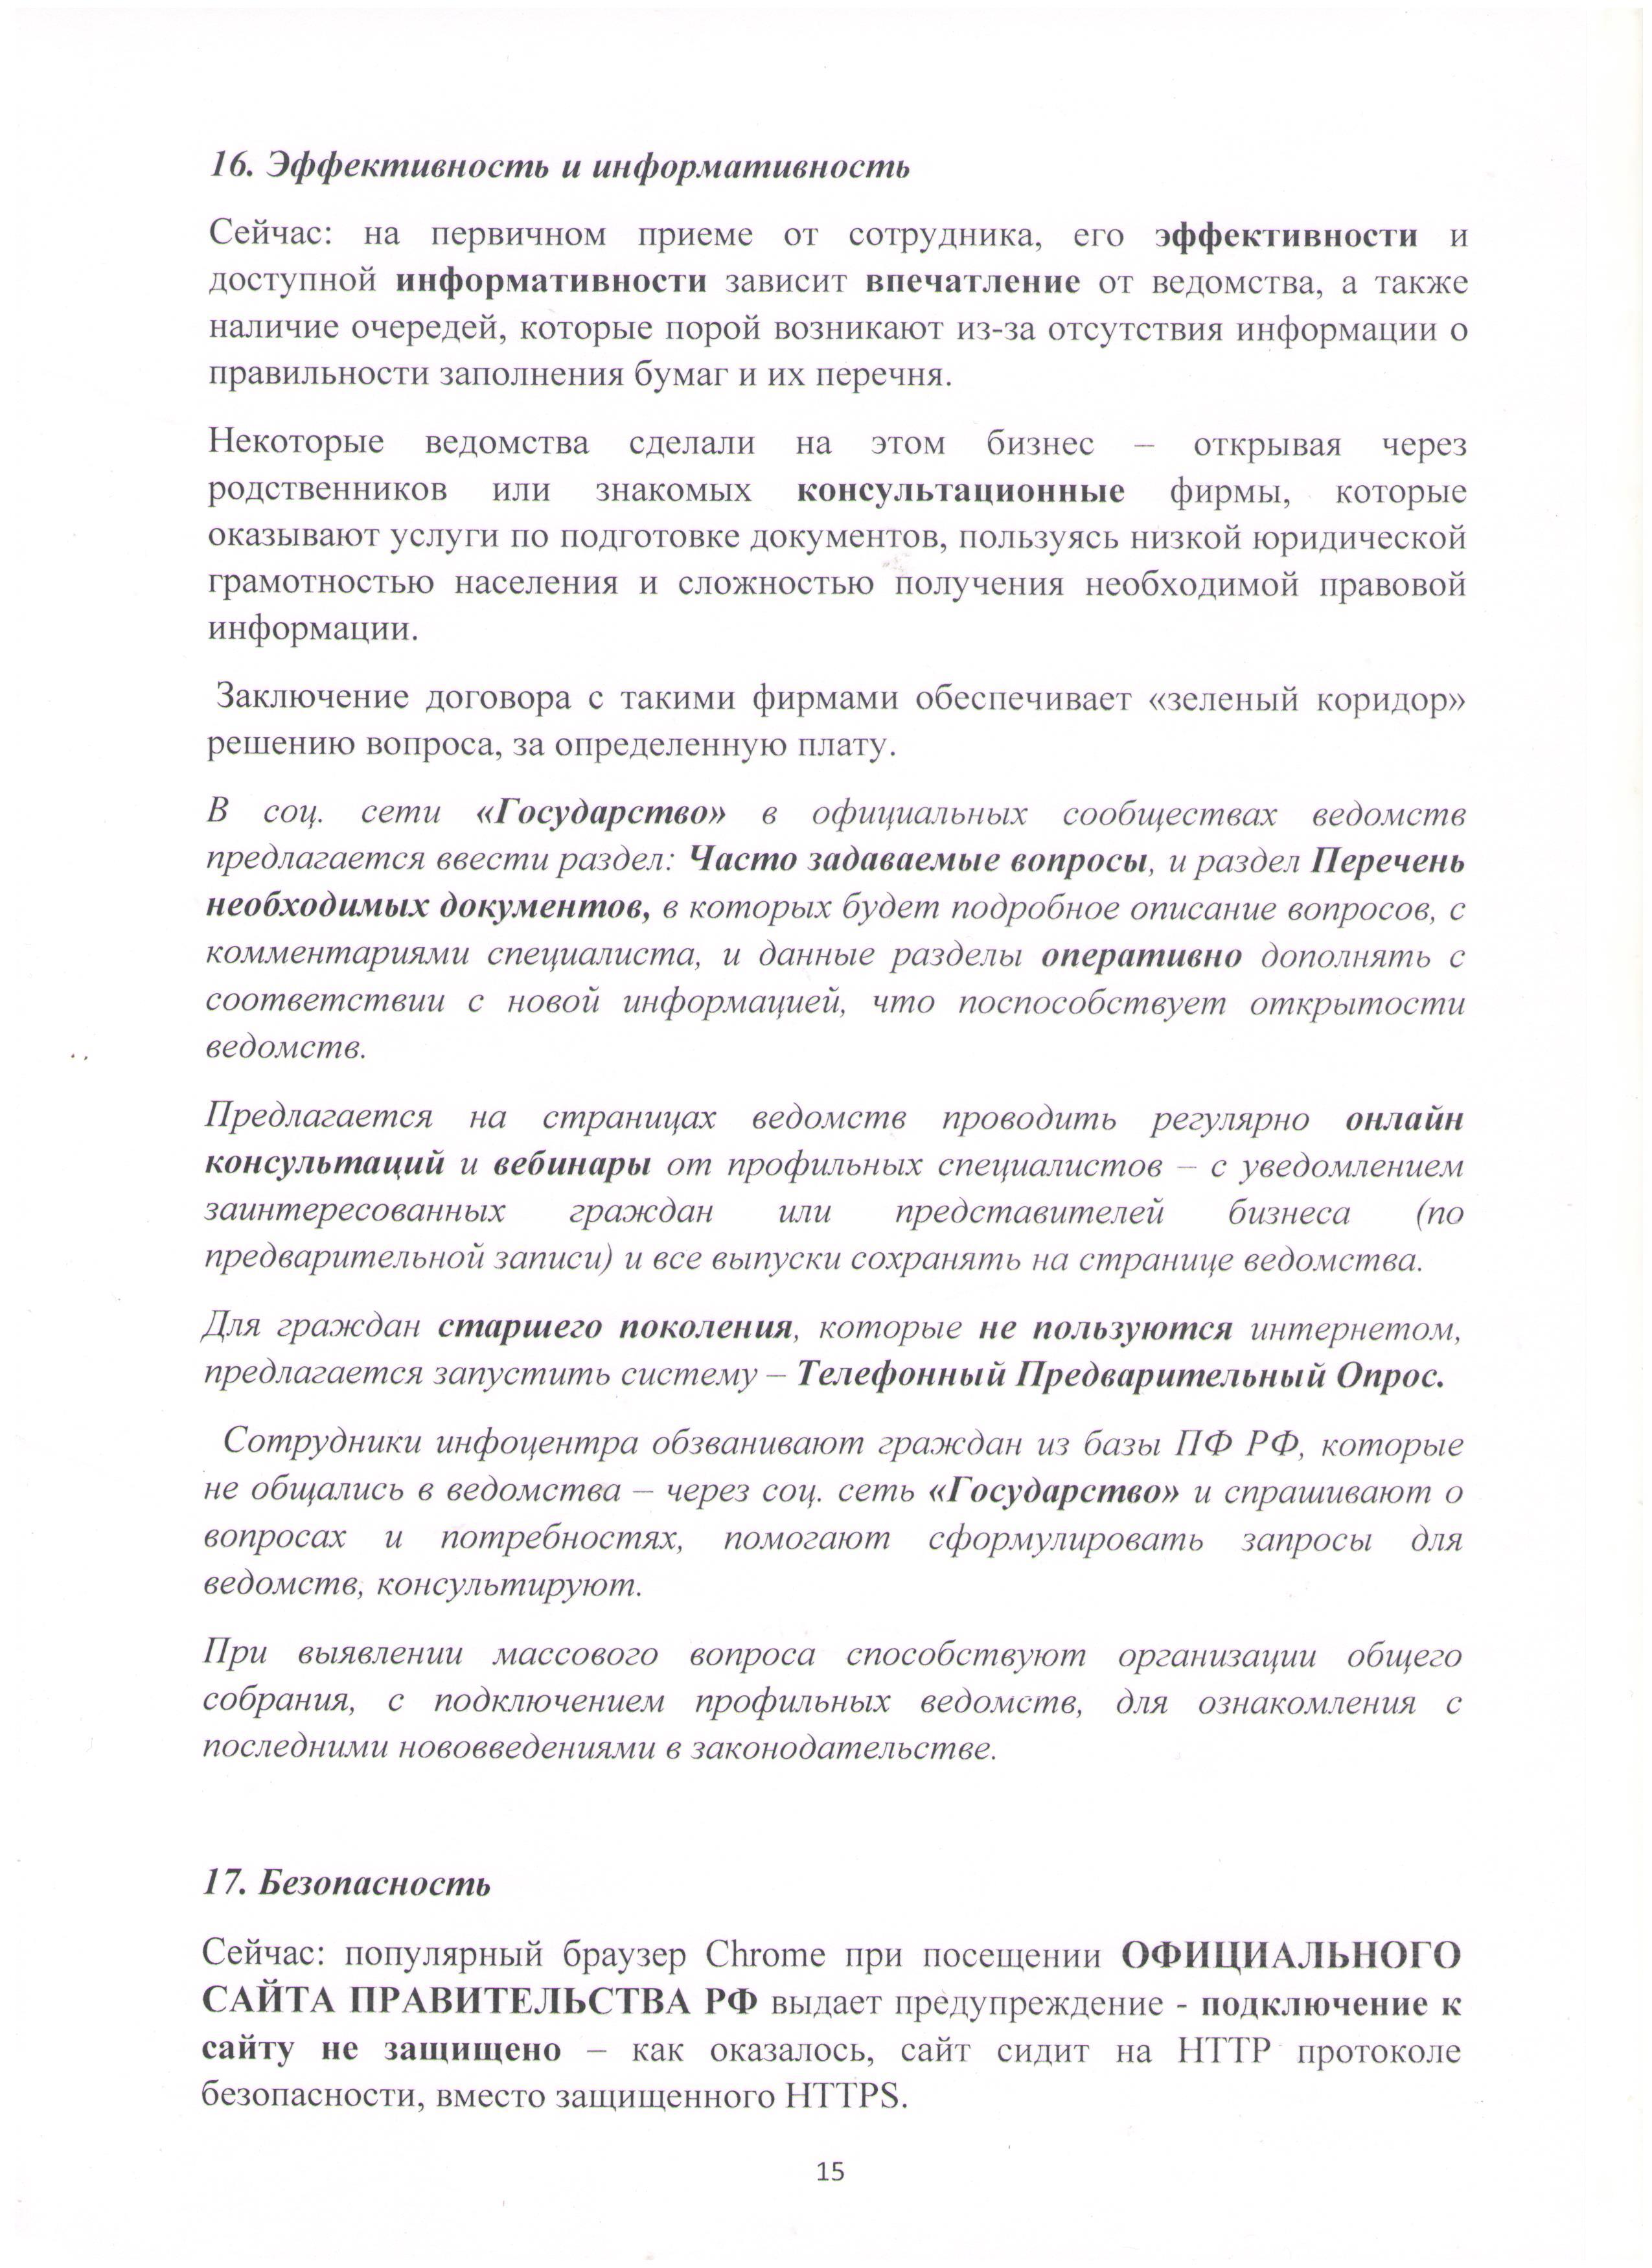 Открытое письмо Президенту РФ Лист 15